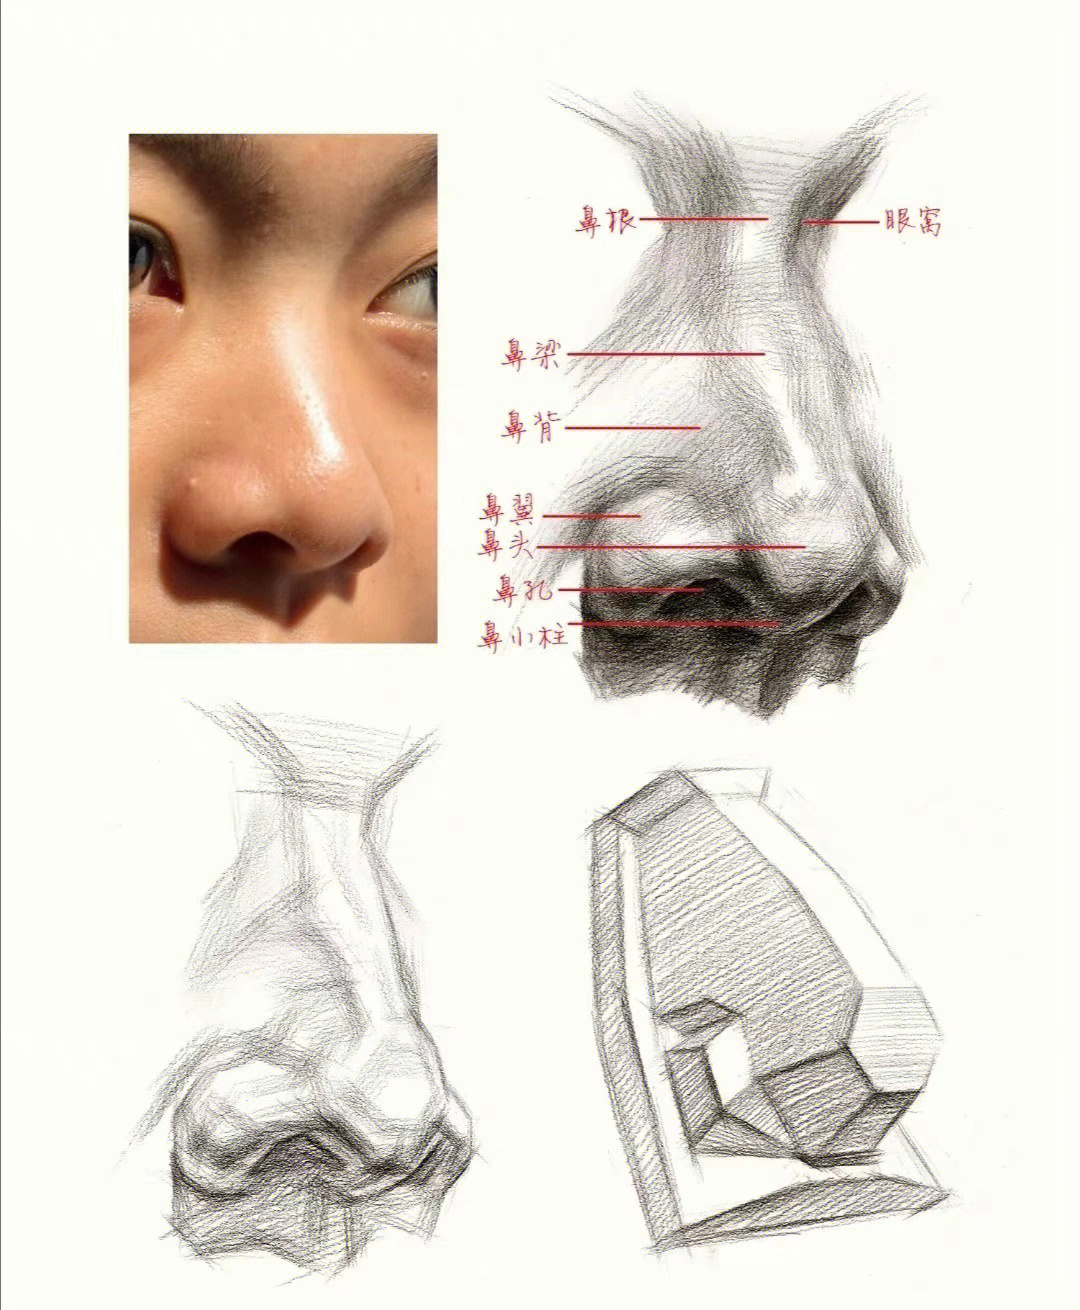 素描头像鼻子的详细图解60练起来606060